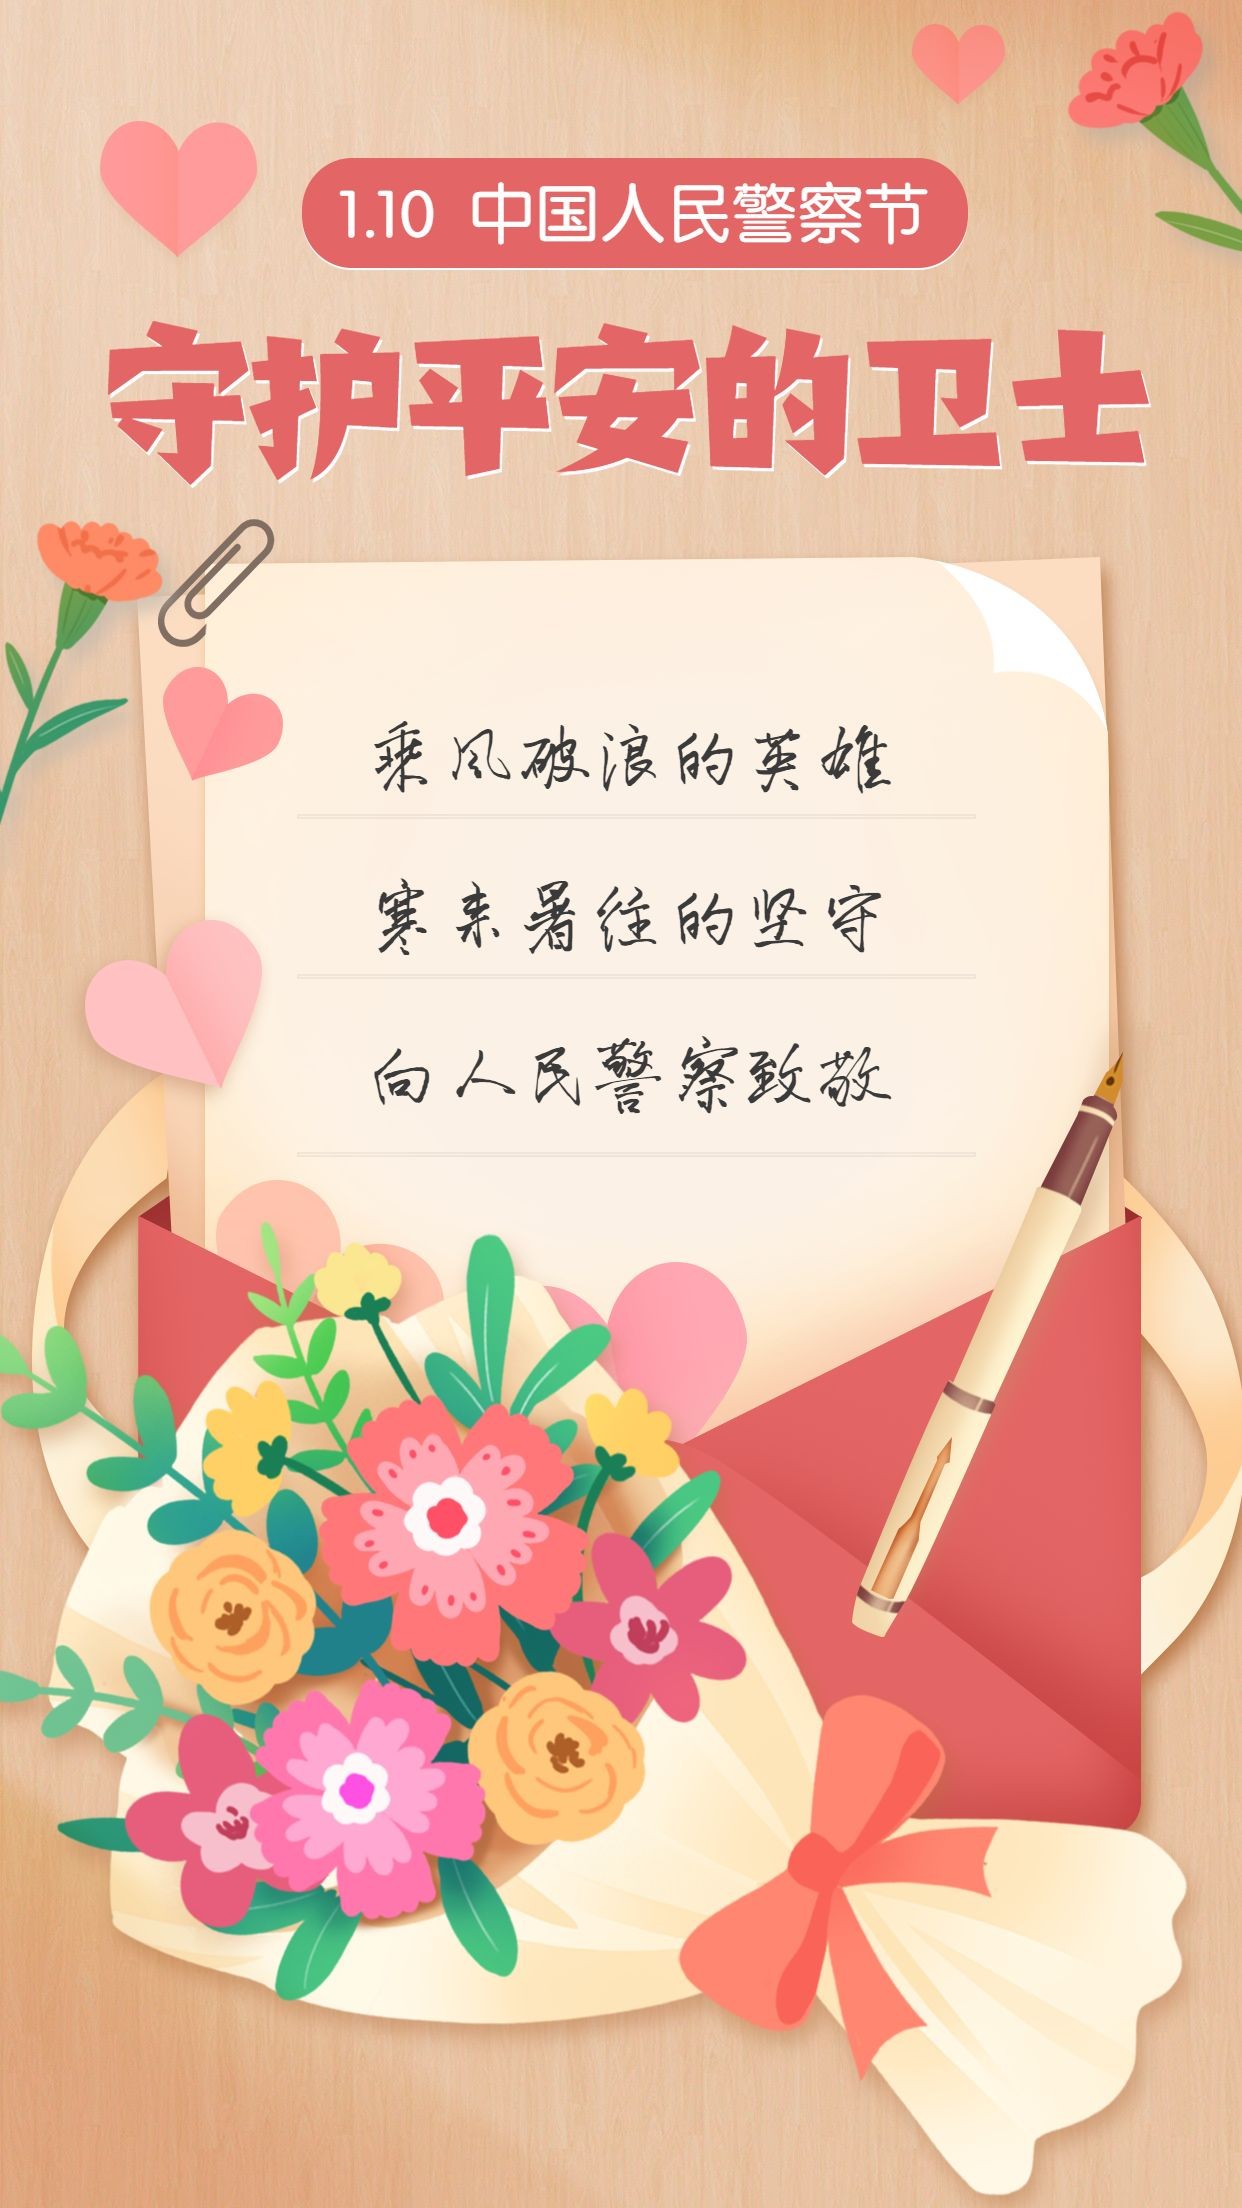 中国人民警察节祝福致敬插画手机海报预览效果